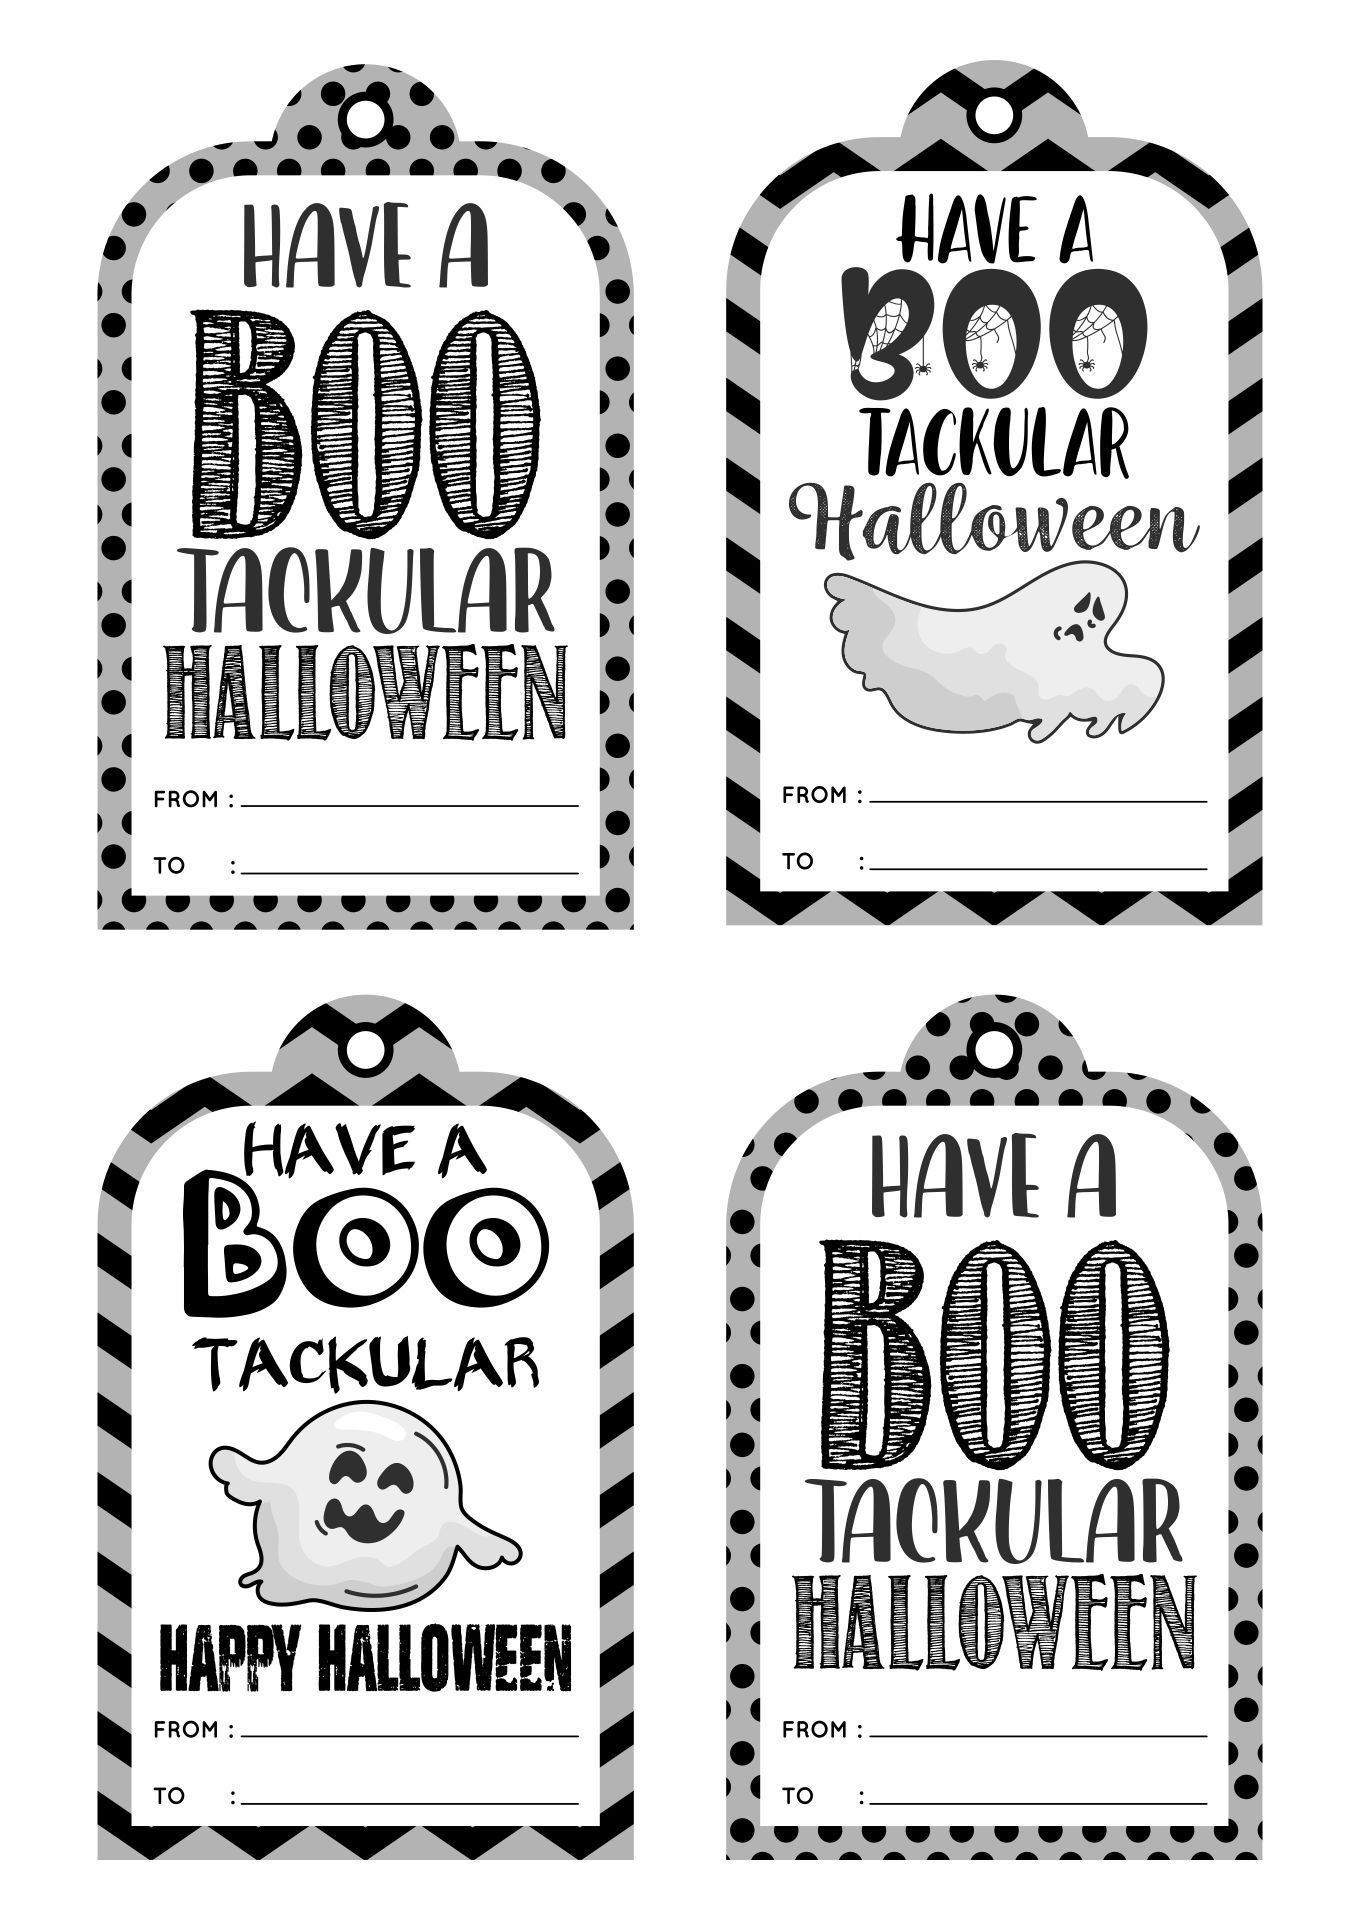 Printable Grey Bootackular Halloween Gift Tags